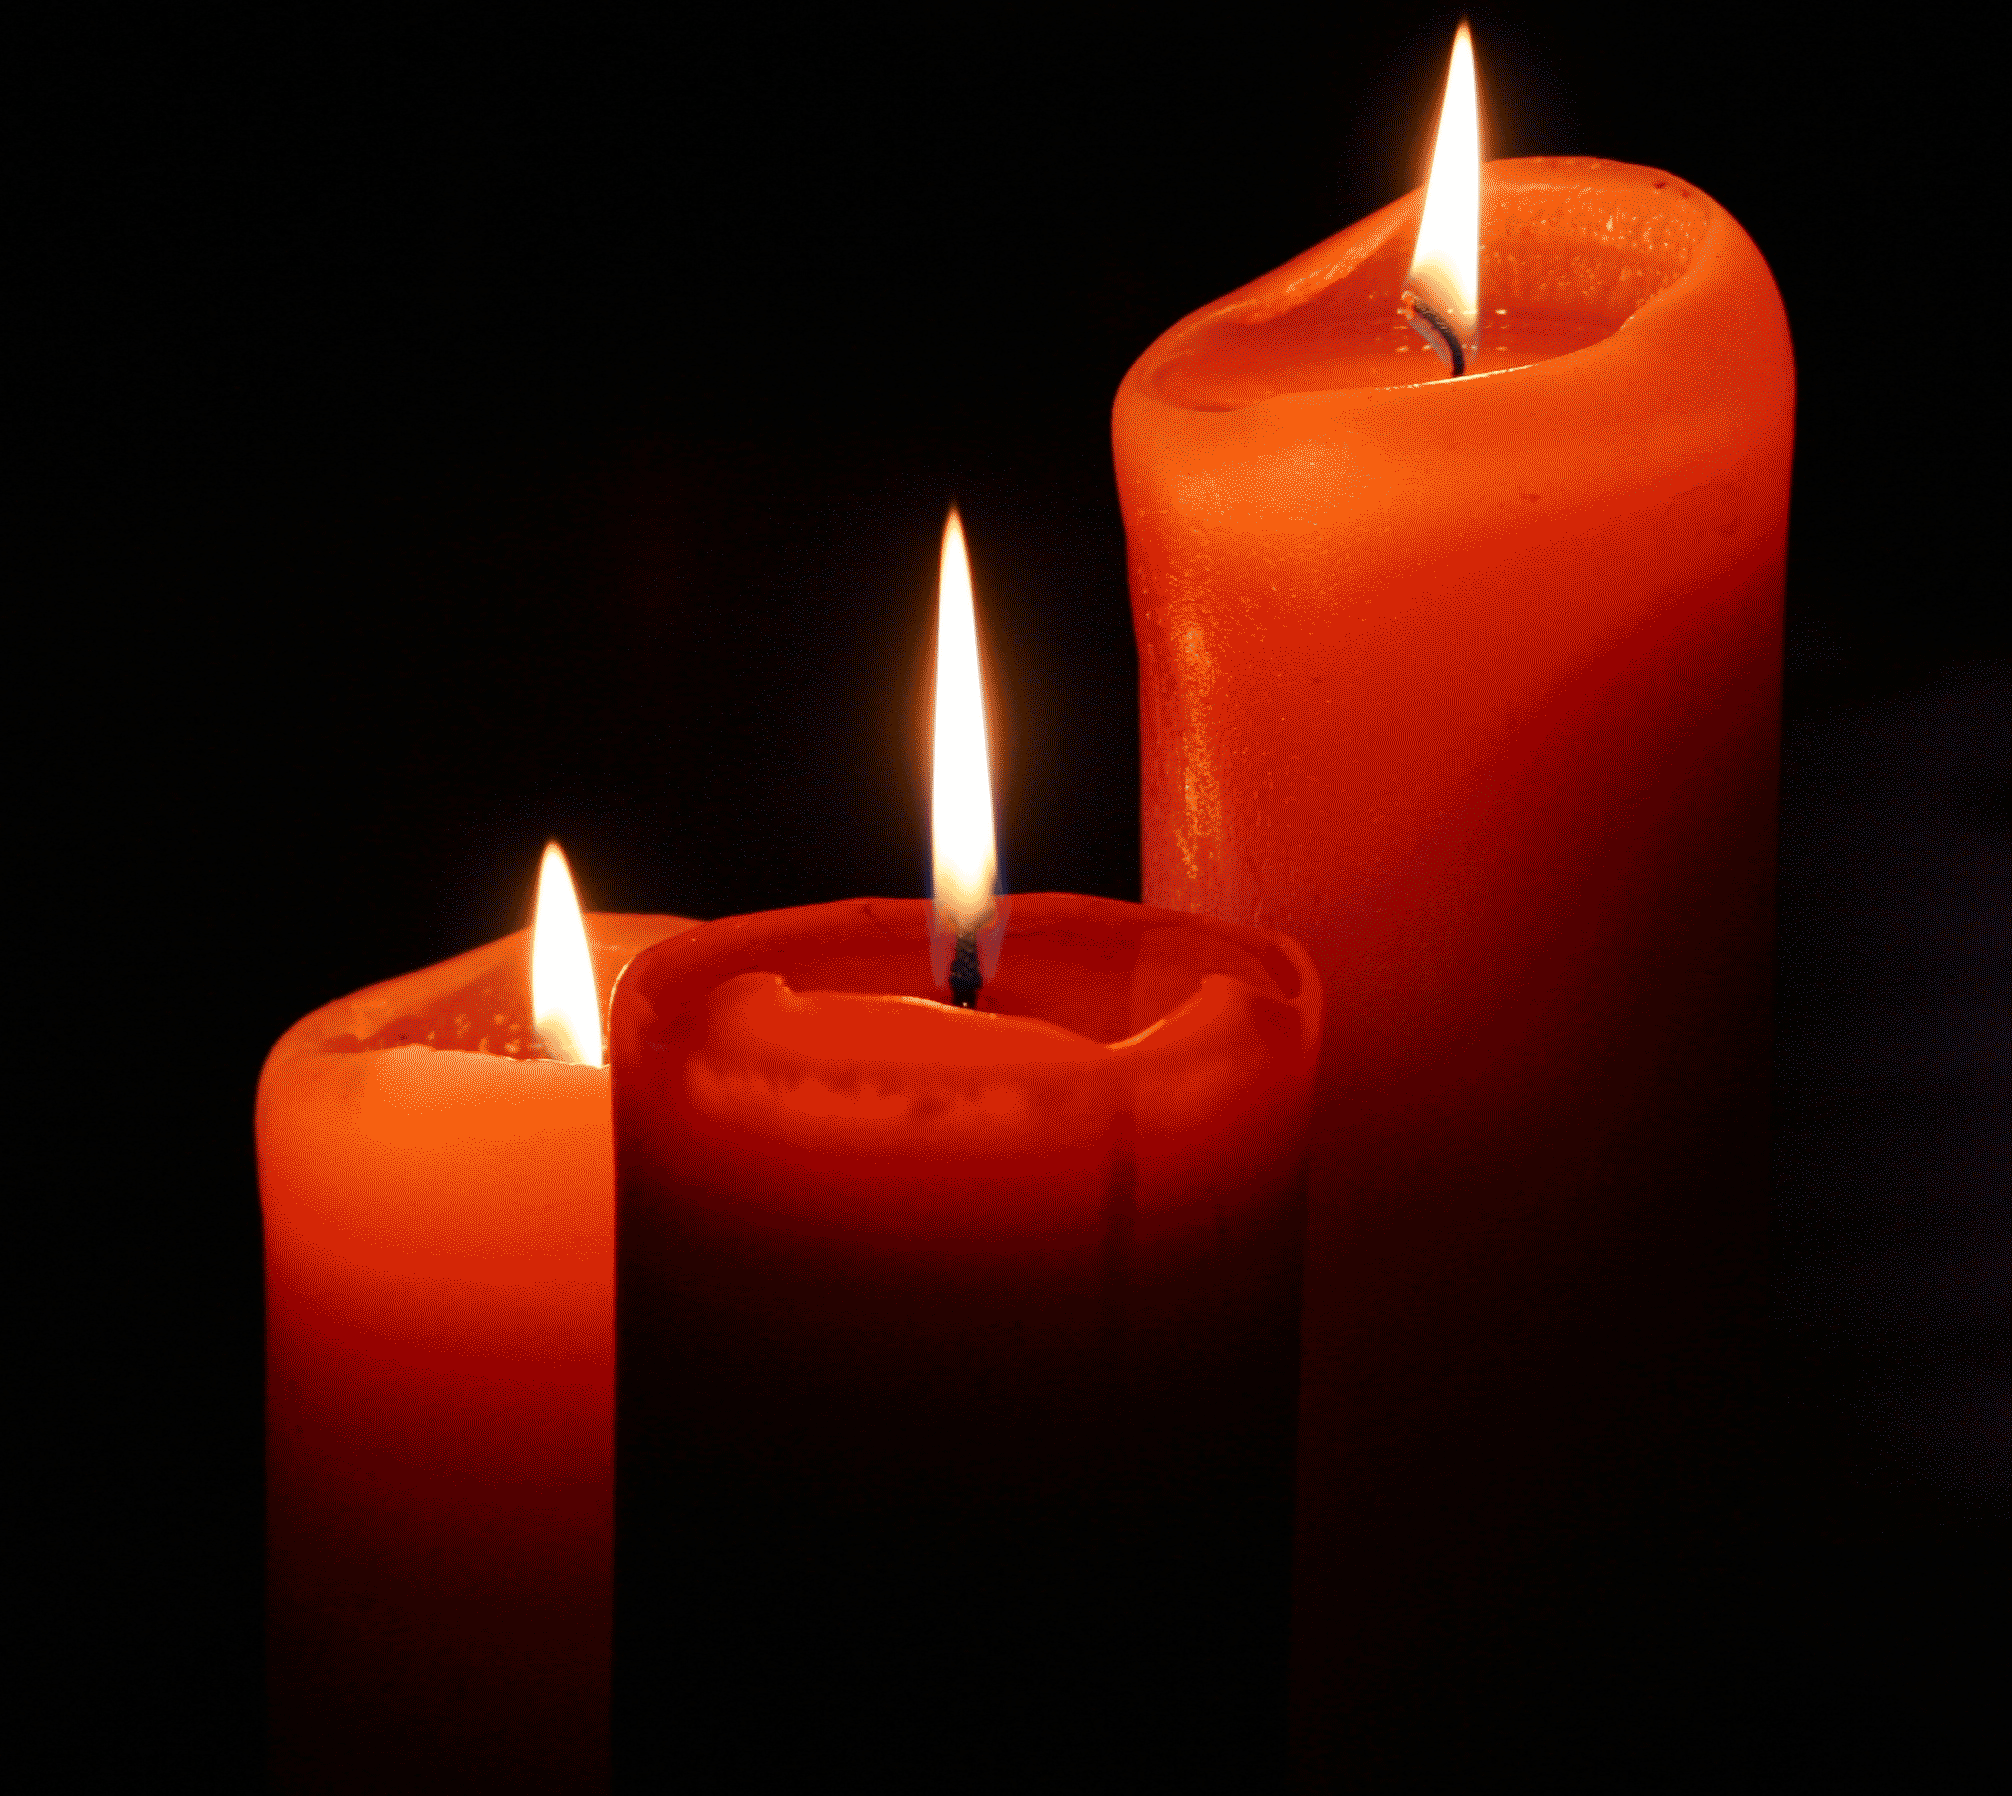 اجمل صور شموع متحركة رومانسية , شمع متحرك حمراء بجودة عالية  Candles Animations 2015_1412110572_162